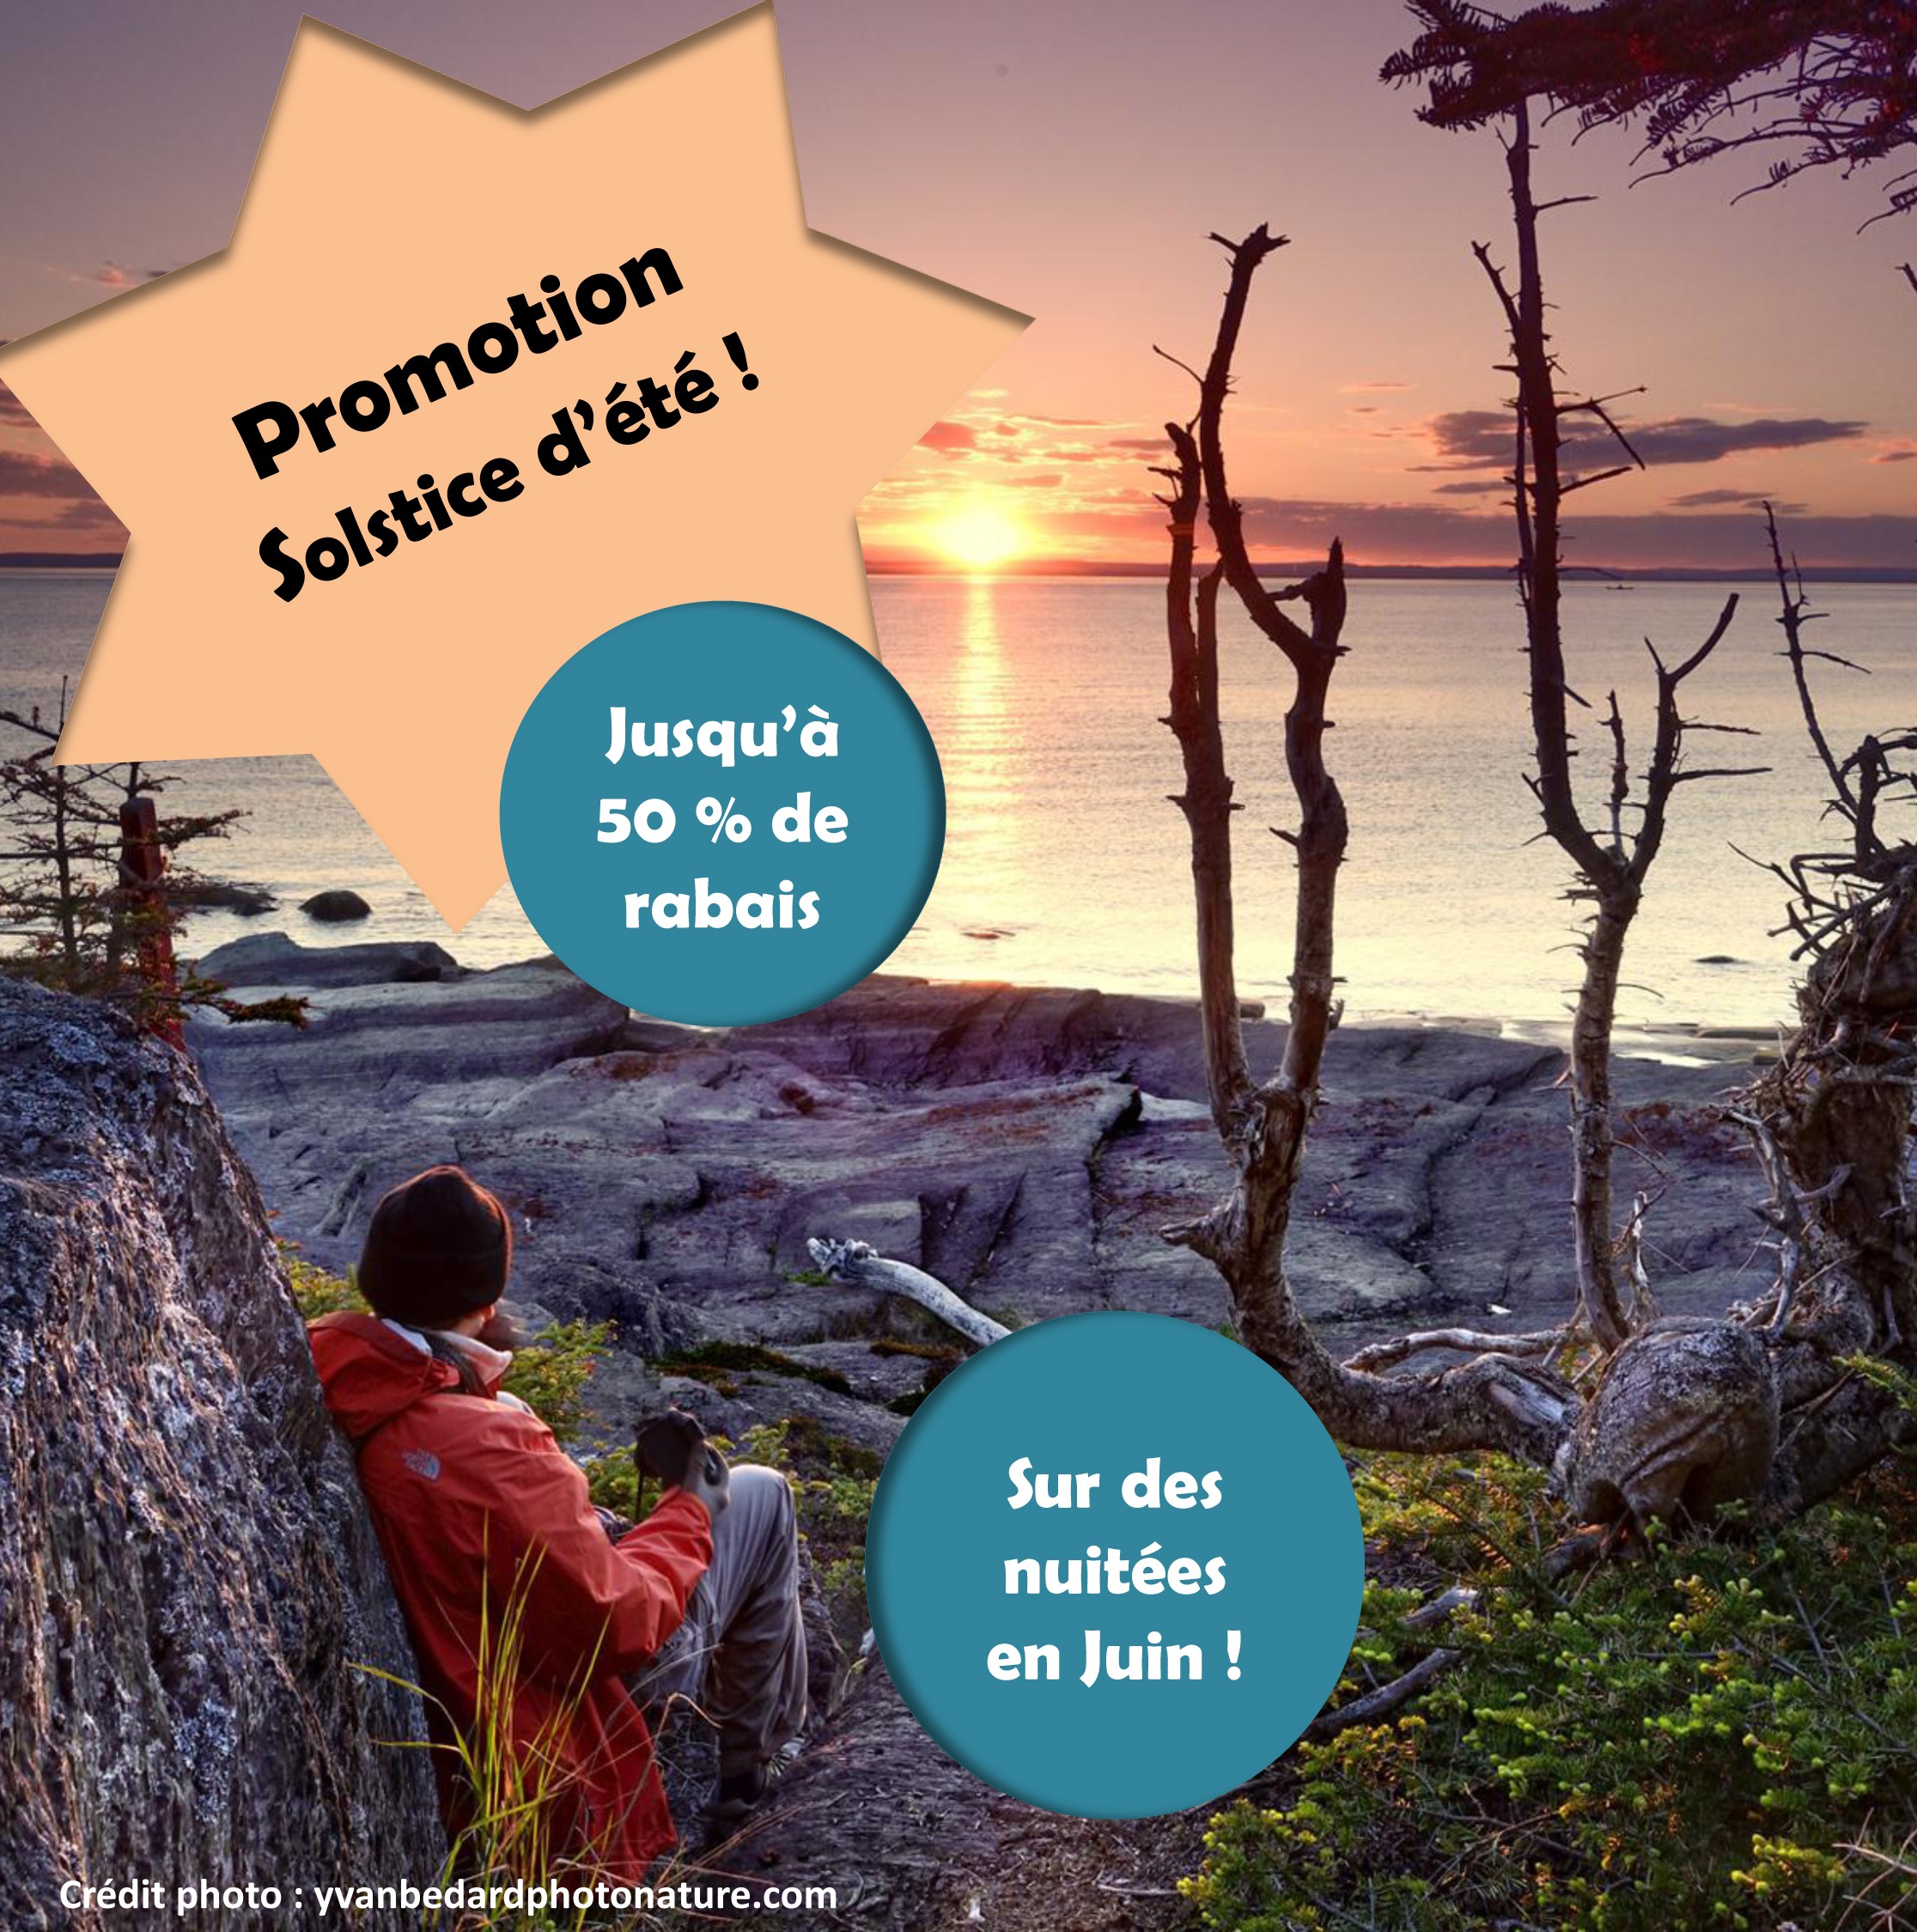 Promotion Solstice d'été ! Jusqu’à 50% de rabais sur des nuitées en Juin ! au Parc naturel et historique de l’Île aux Basques